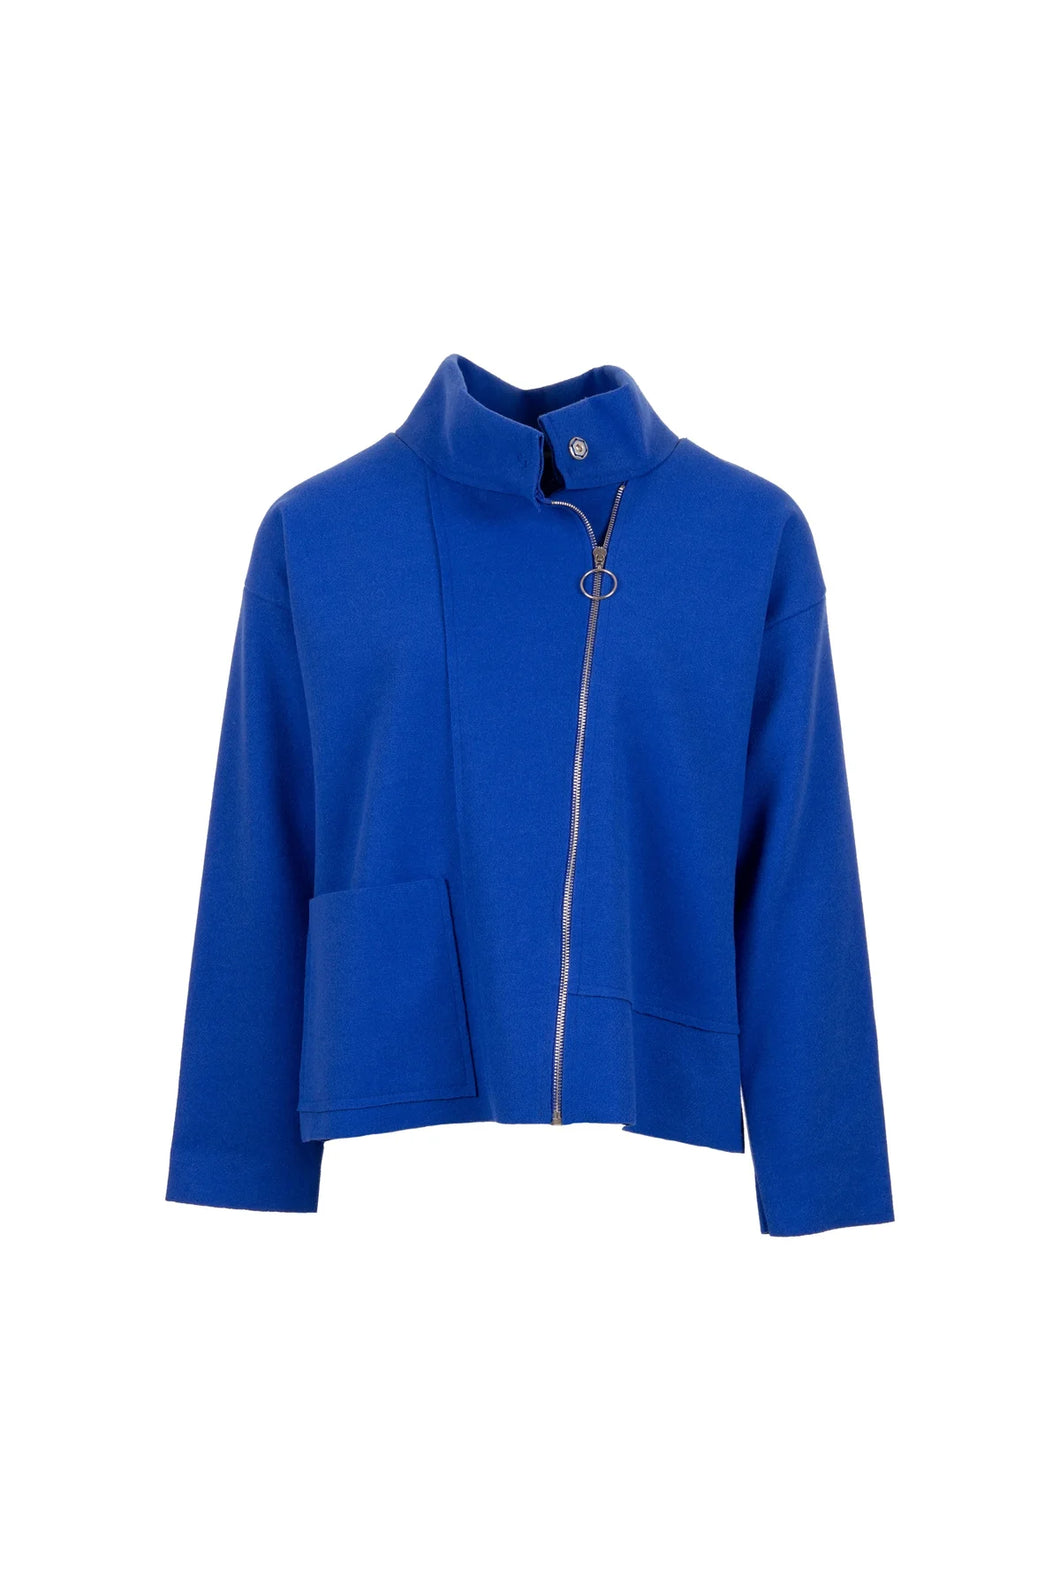 W23177- Blue Side Zip Jacket -Peruzzi